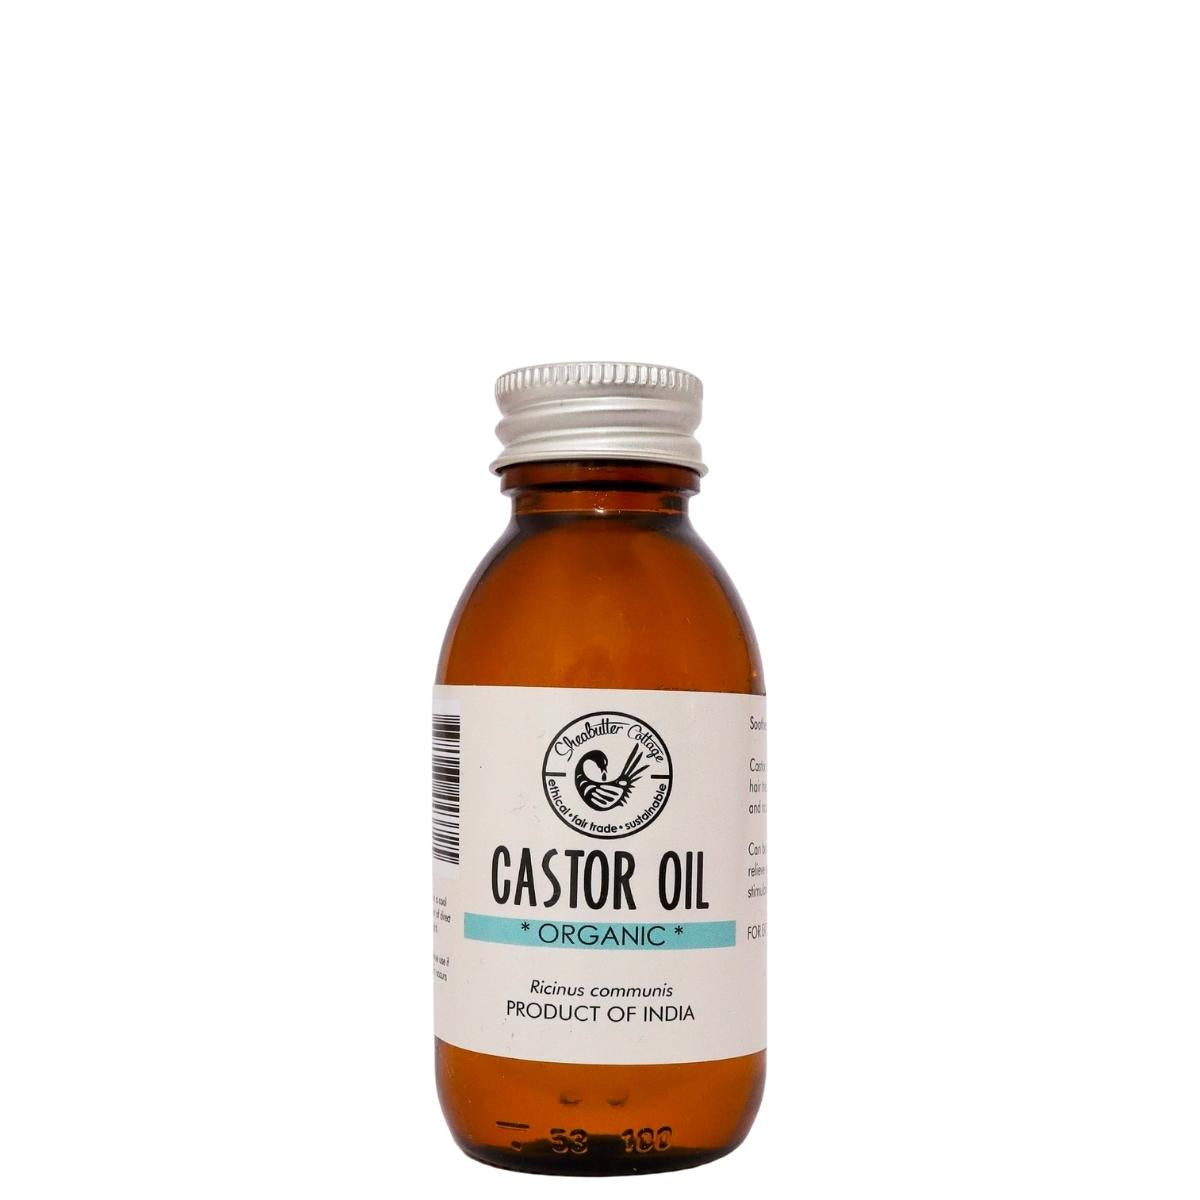 La Castor Oil est idéale pour les traitements capillaires. Elle adoucit, nourrit et stimule la pousse des cheveux. Idéale en bains d'huile ou massage du cuir chevelu